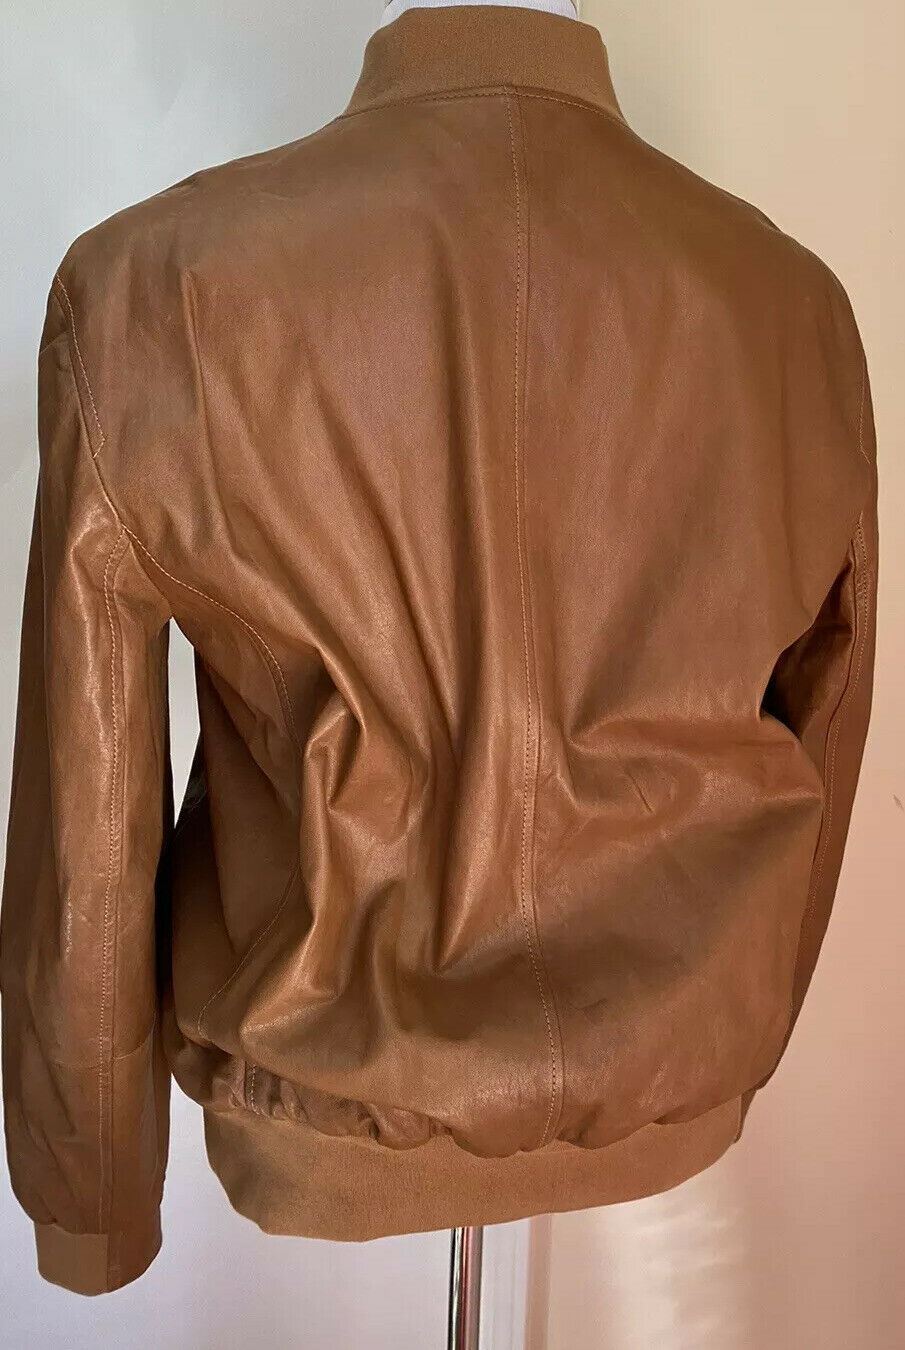 Новая мужская двусторонняя кожаная куртка Brunello Cucinelli стоимостью 5995 долларов США DK Коричневый/Темно-синий L